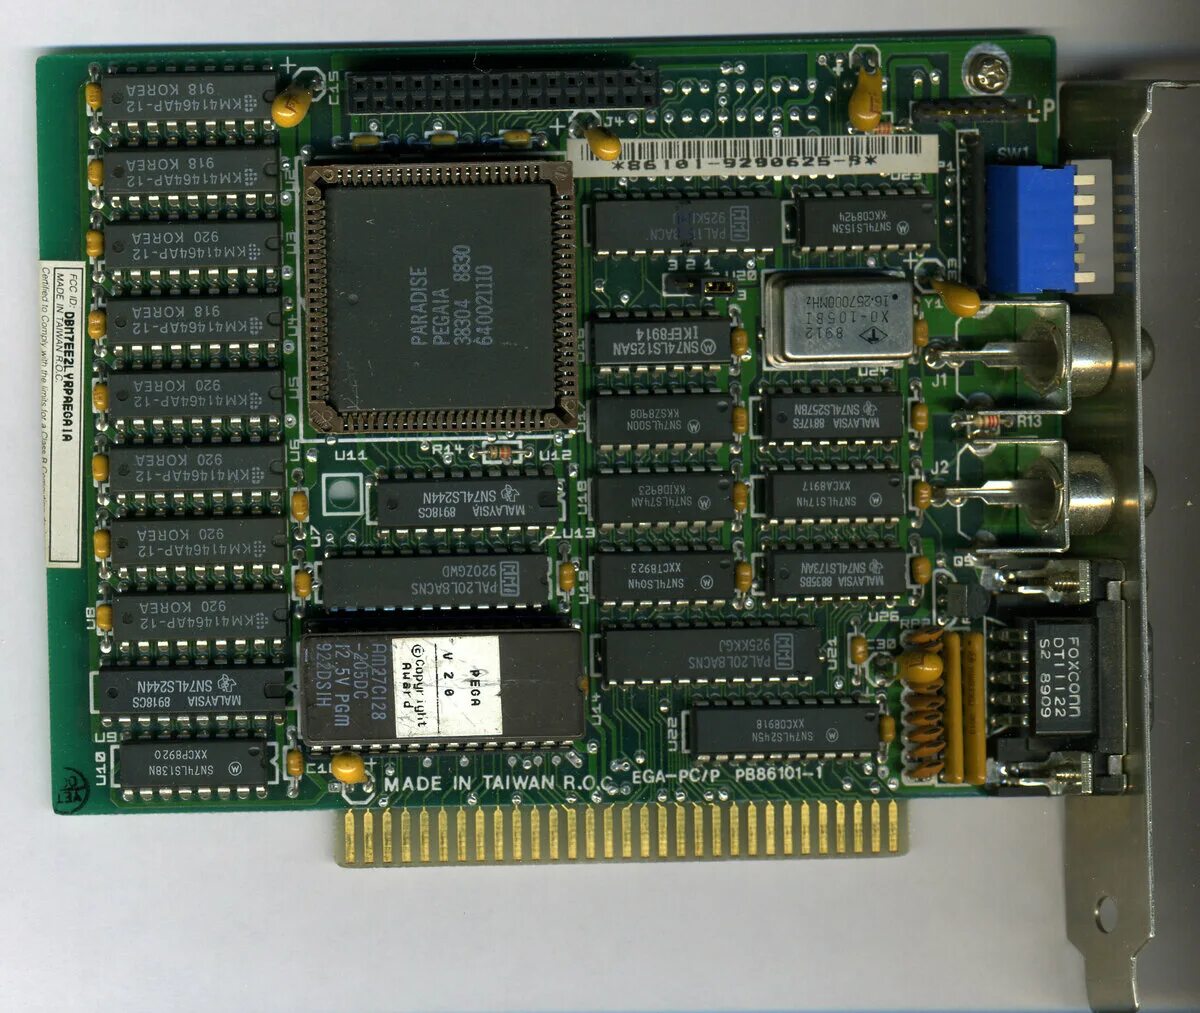 Самая первая видеокарта. Видеокарта IBM mda. CGA видеоадаптер. Видеоадаптер VGA 1987. CGA/ega/VGA видеокарта Isa.